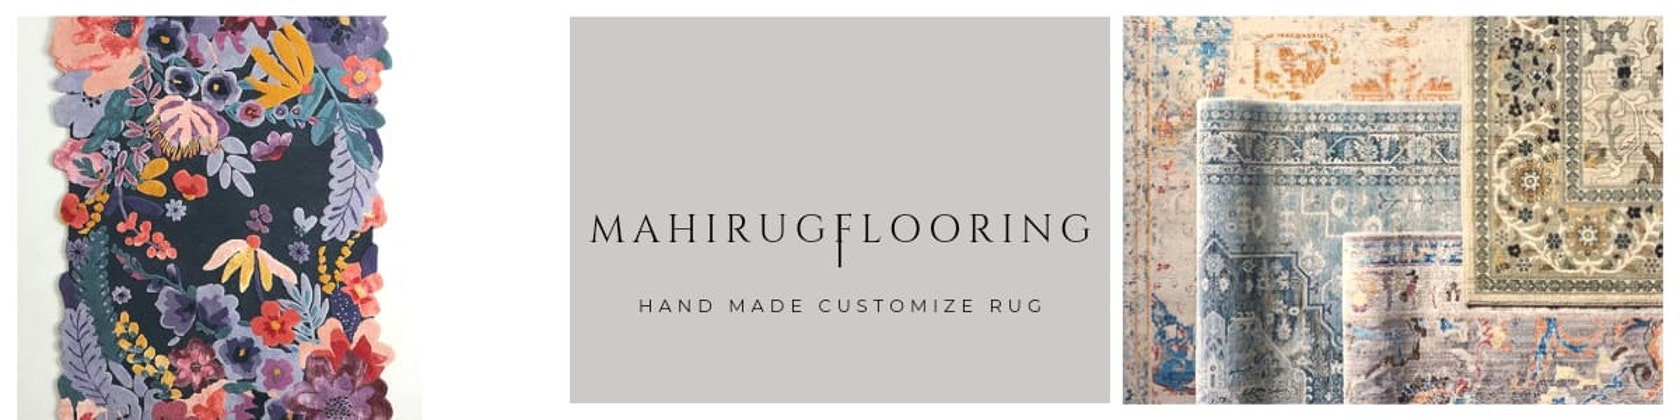 Tapis de salon rond rose en laine tuftée main Ply par Gan Rugs -  Inspiration Luxe